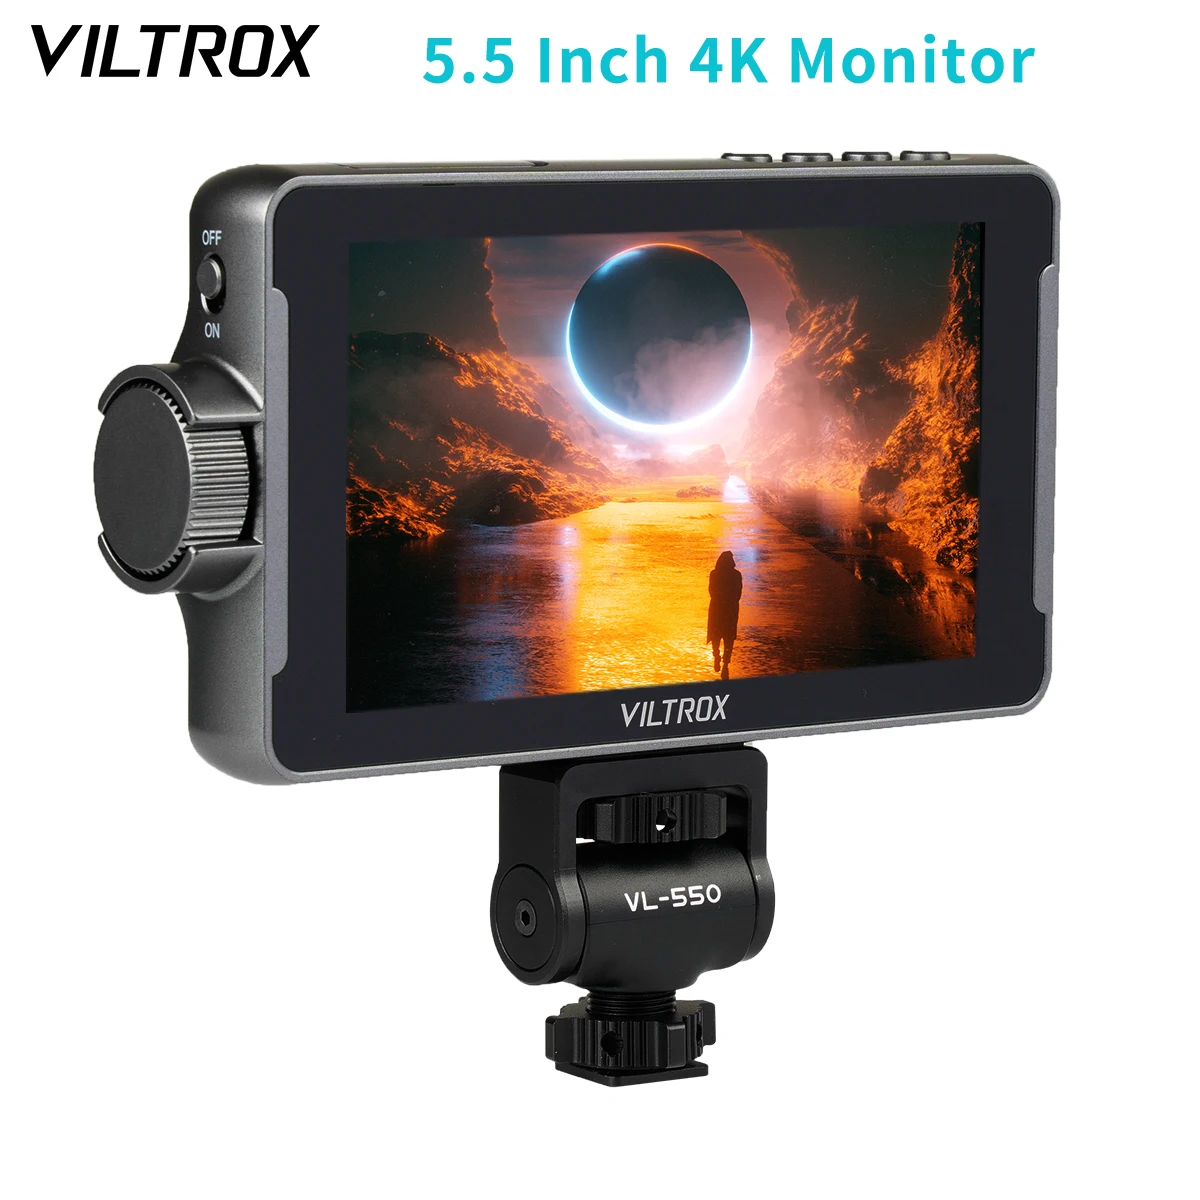 

VILTROX DC-550 5.5 Inch 1920x1080 4K Profissional Portable Camera Studio Monitor HDMI Touch Screen Field 3D LUT Director Monitor